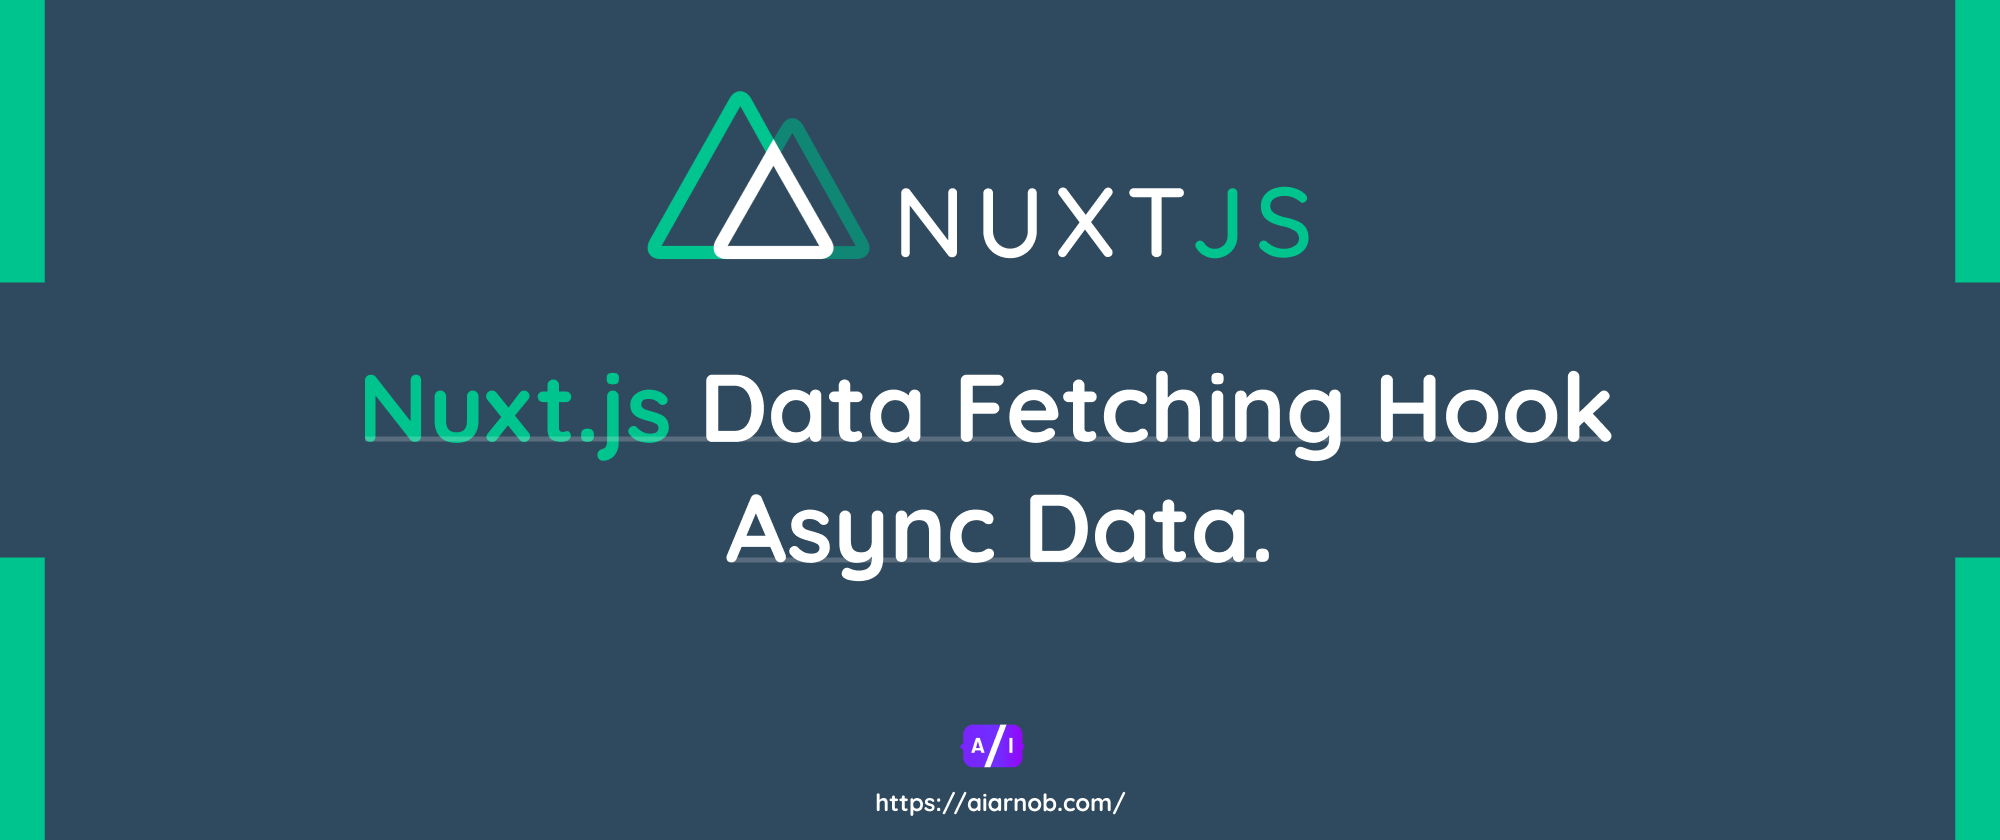 Nuxt.js Data Fetching Hook: Async Data